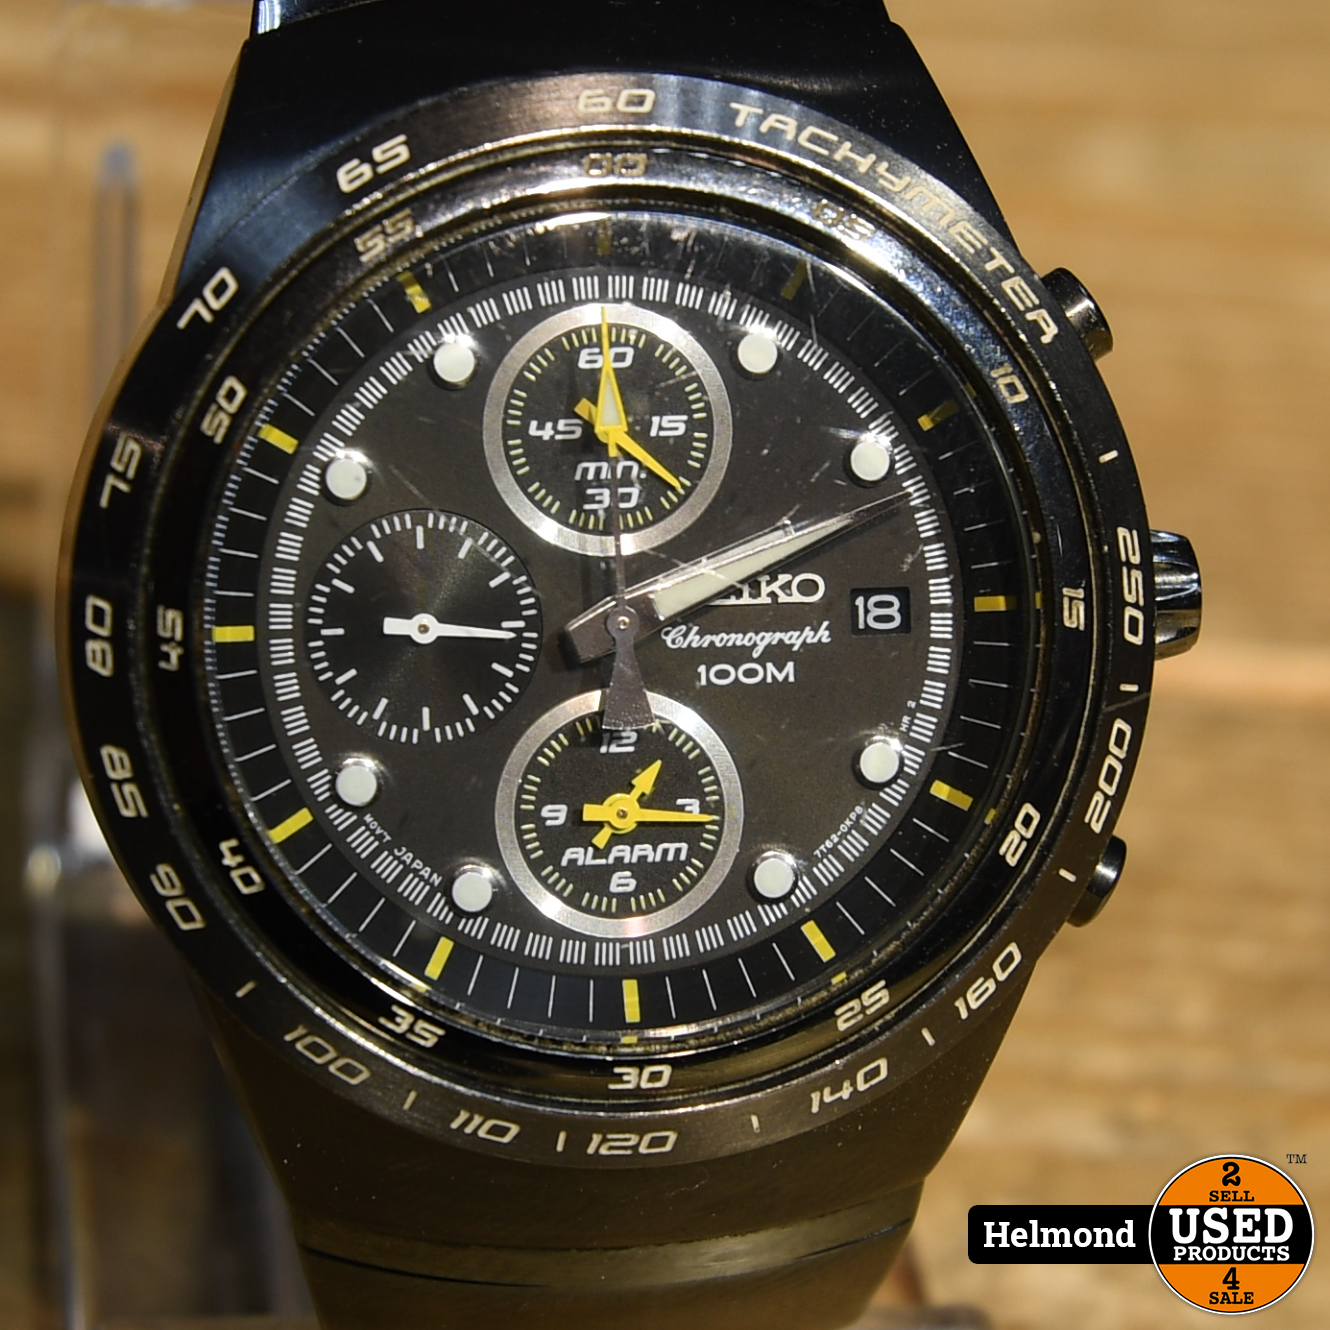 Seiko 7T62 Titanium Horloge I Nette Staat - Used Products Helmond